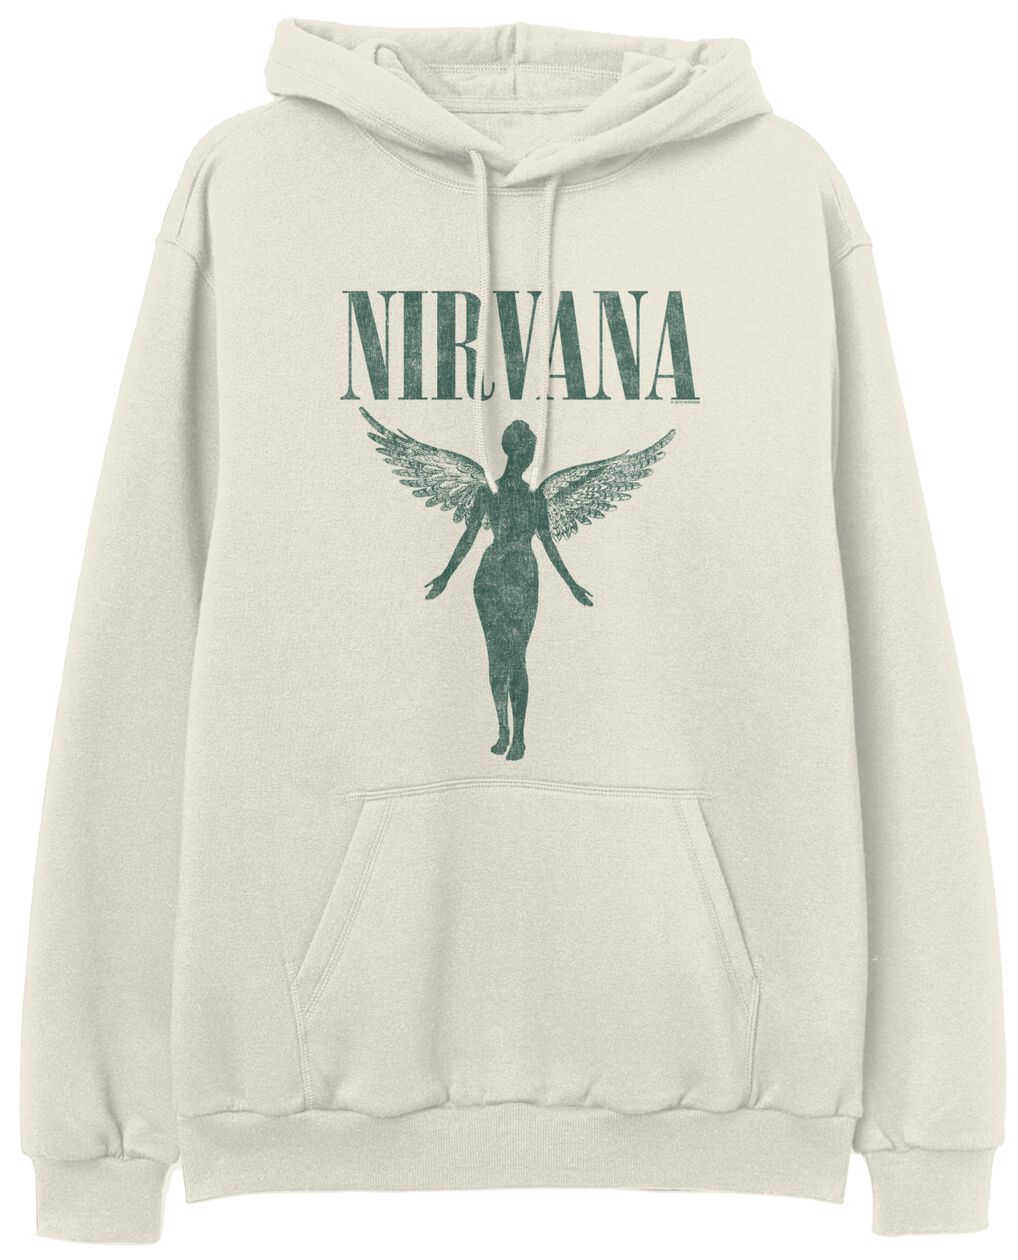 Nirvana Kapuzenpullover - Angel - S bis XXL - für Männer - Größe XXL - beige  - Lizenziertes Merchandise!